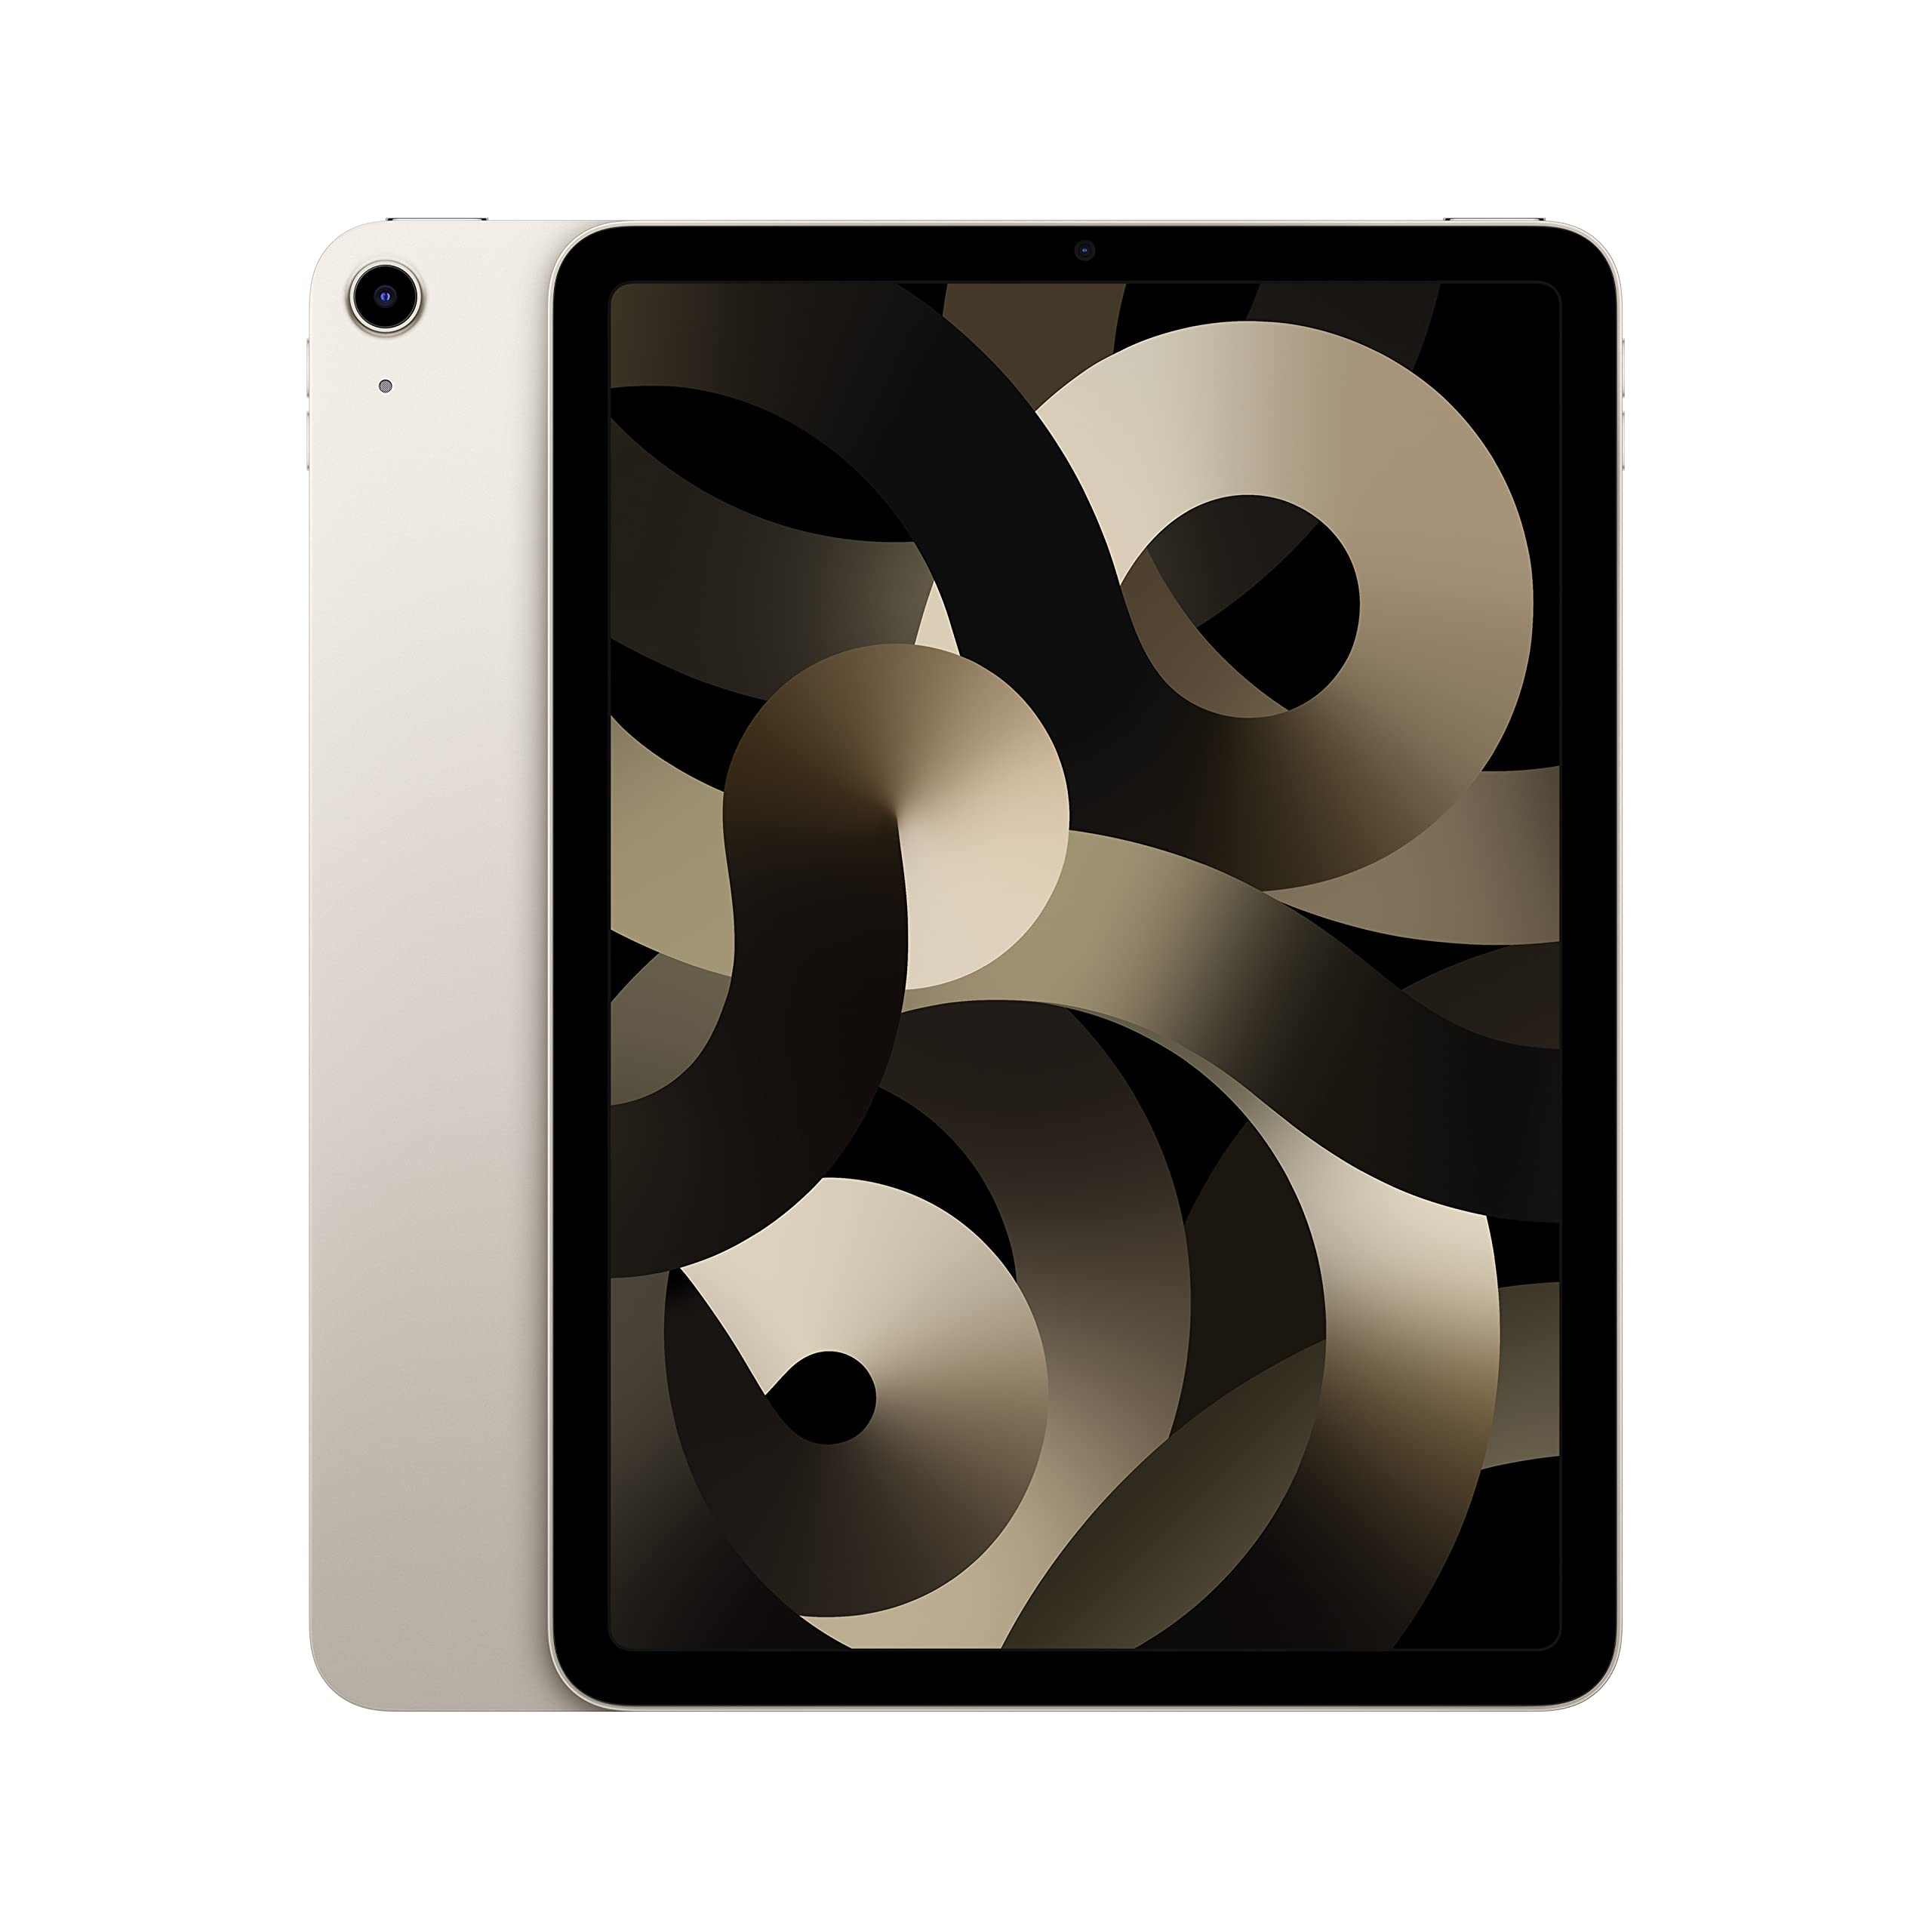 Apple iPad Air (5th Gen): M1 chip, 10.9-inch Liquid Retina Display, 256GB, Wi-Fi, Starlight $599